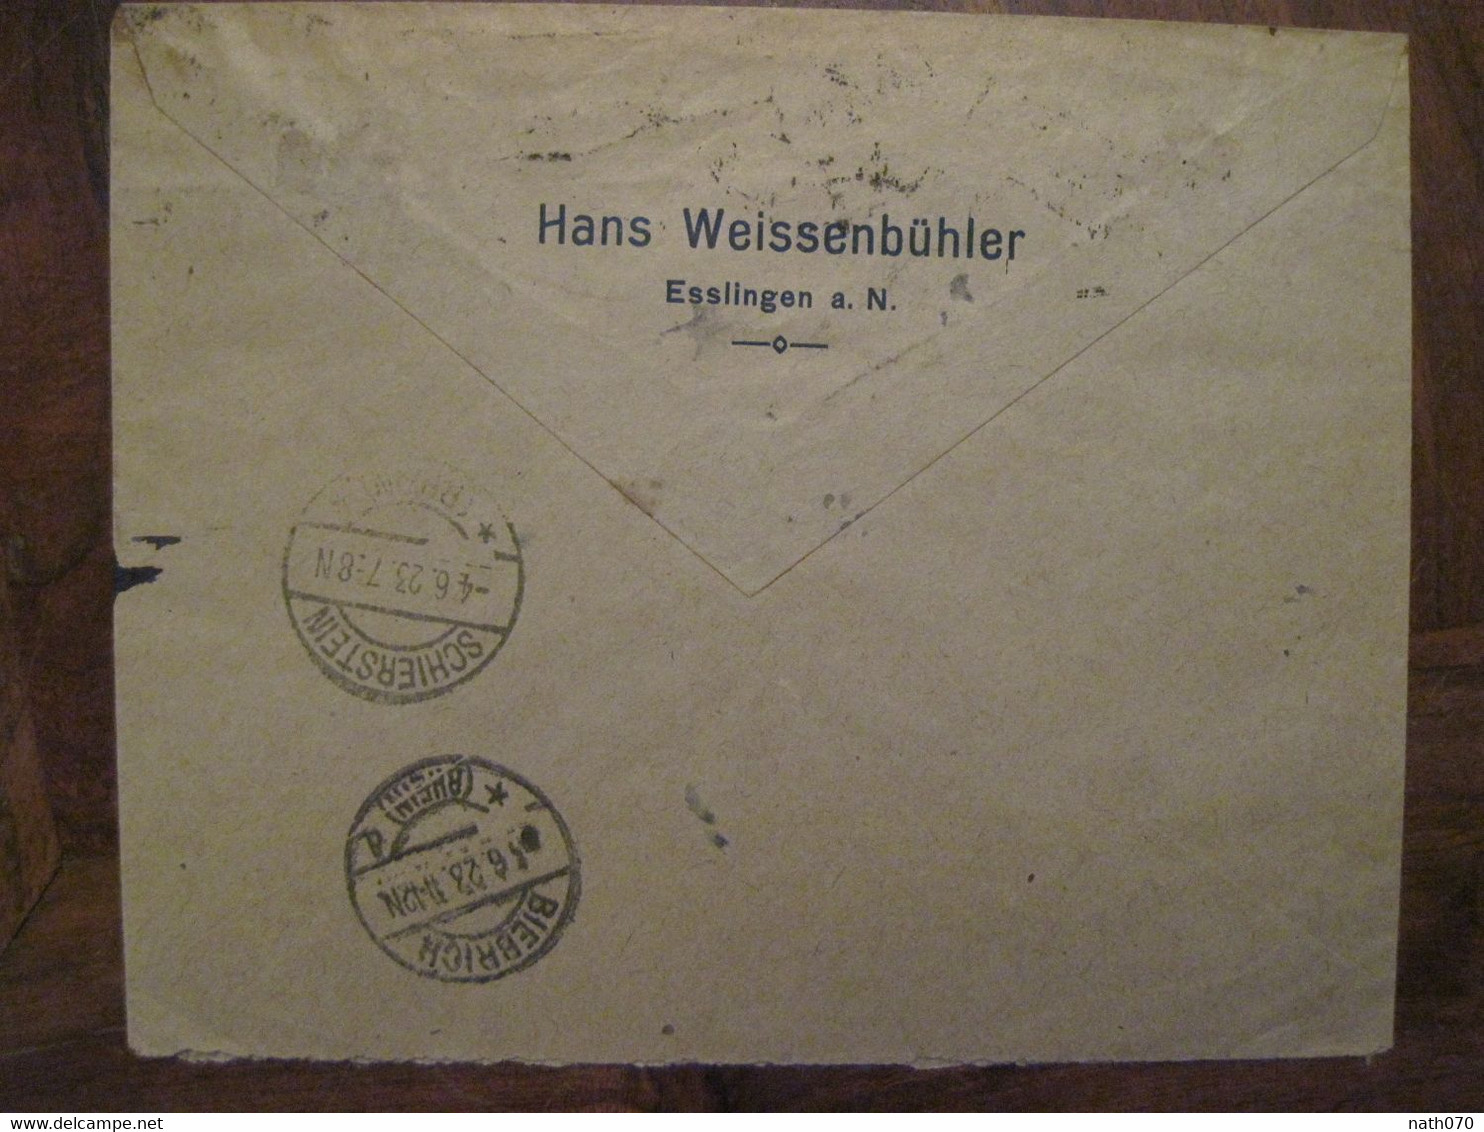 1923 Esslingen Schierstein Flugpost Luftpost Air Mail Poste Aerienne Cover Deutsches Reich DR Germany Einschreiben Horn - Poste Aérienne & Zeppelin